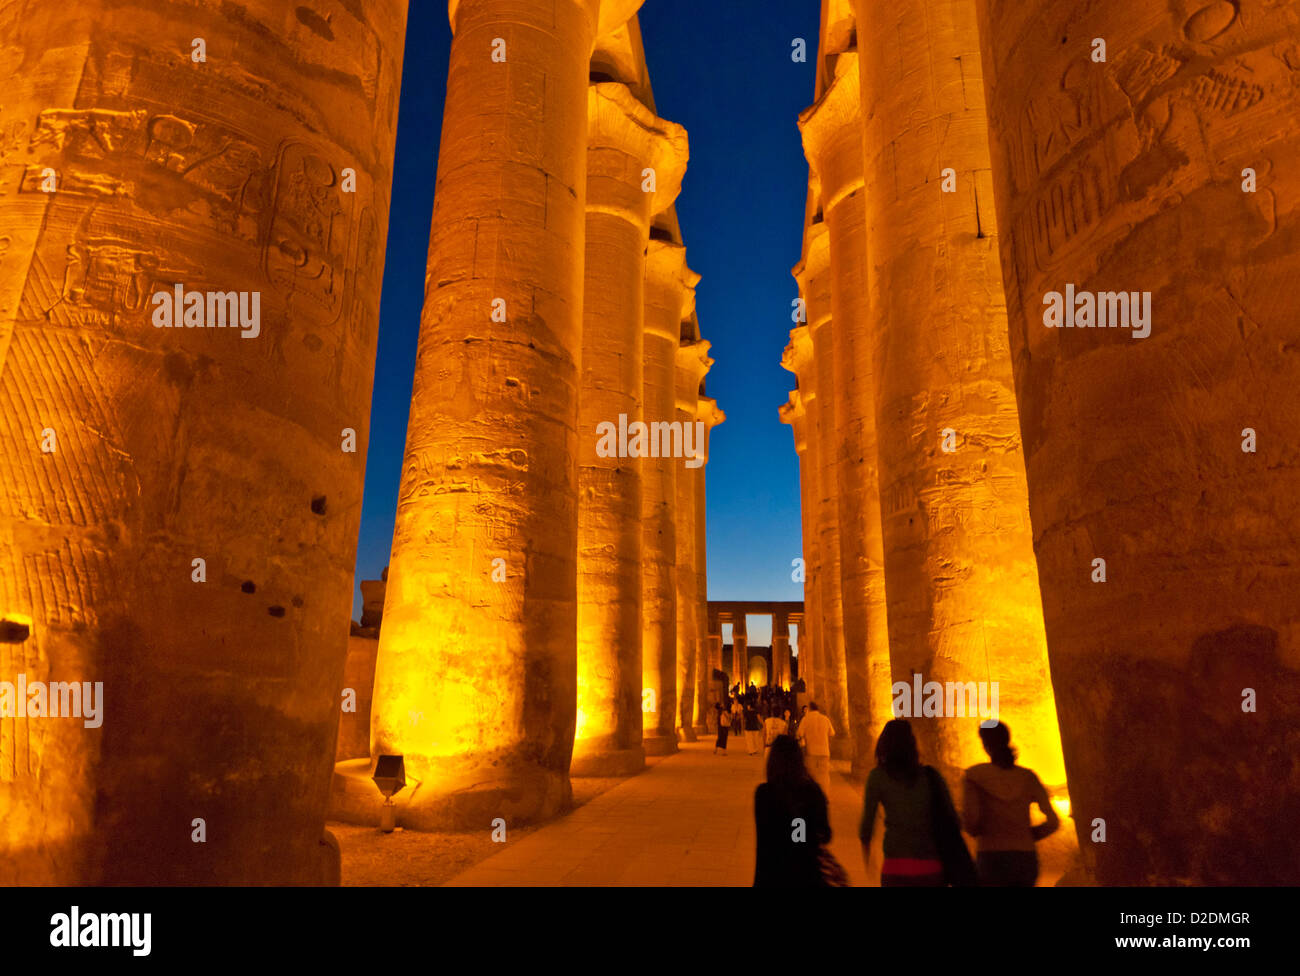 Les touristes marcher parmi les courts de colonnes de la cour d'Amenhotep III du temple de Louxor Louxor au coucher du soleil l'Egypte Moyen Orient Banque D'Images